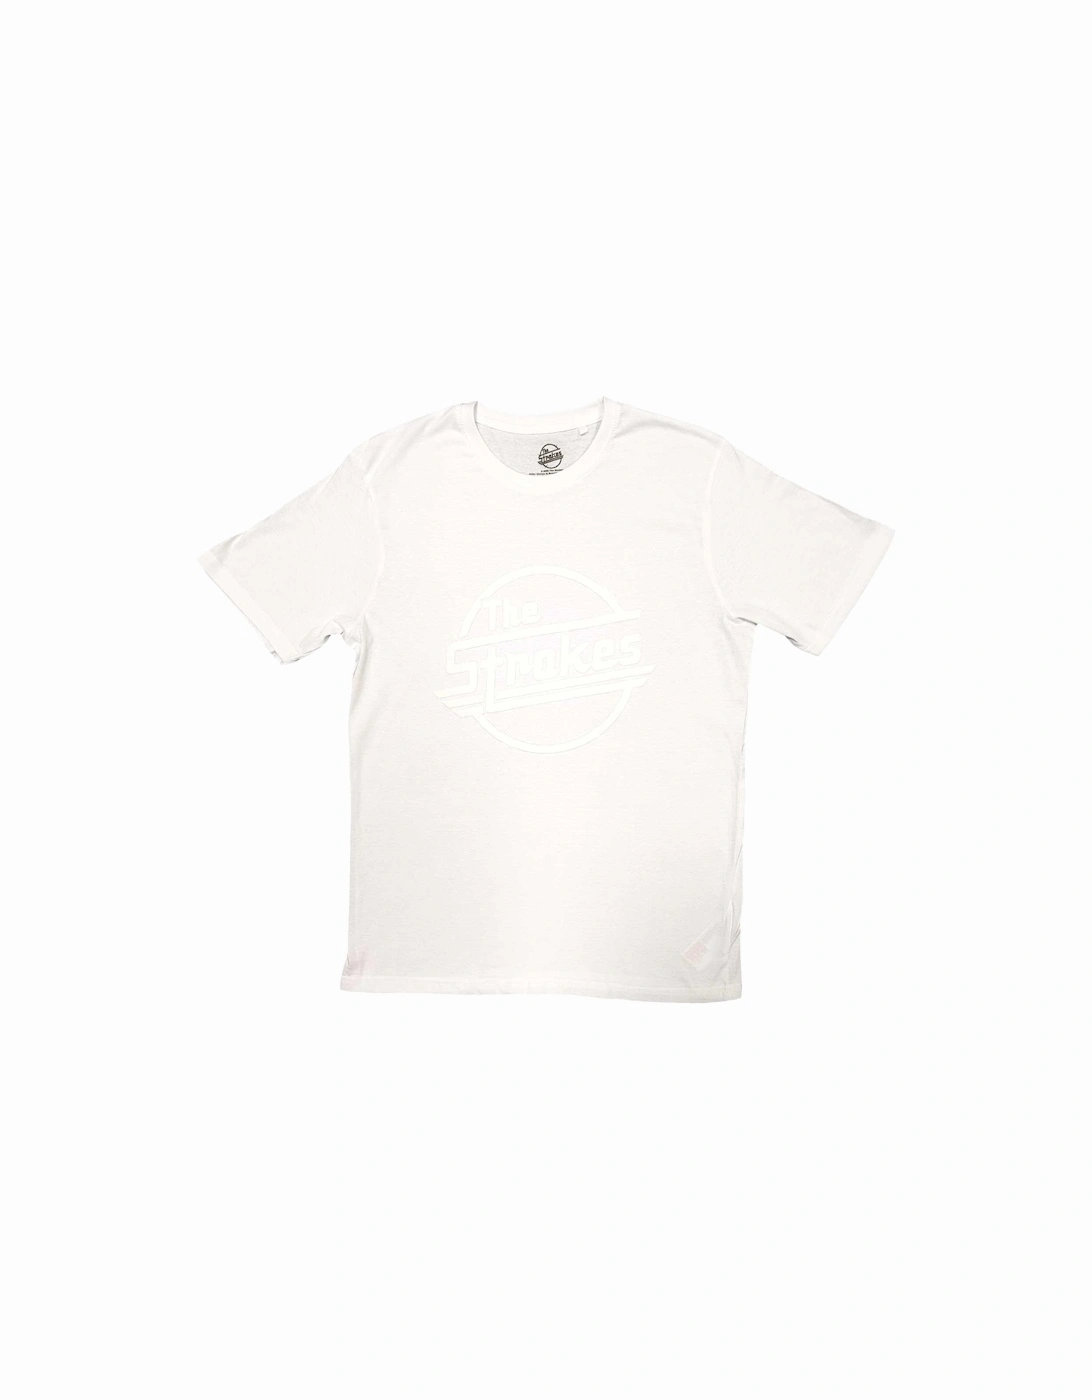 Unisex Adult OG Magna Cotton Hi-Build T-Shirt, 3 of 2